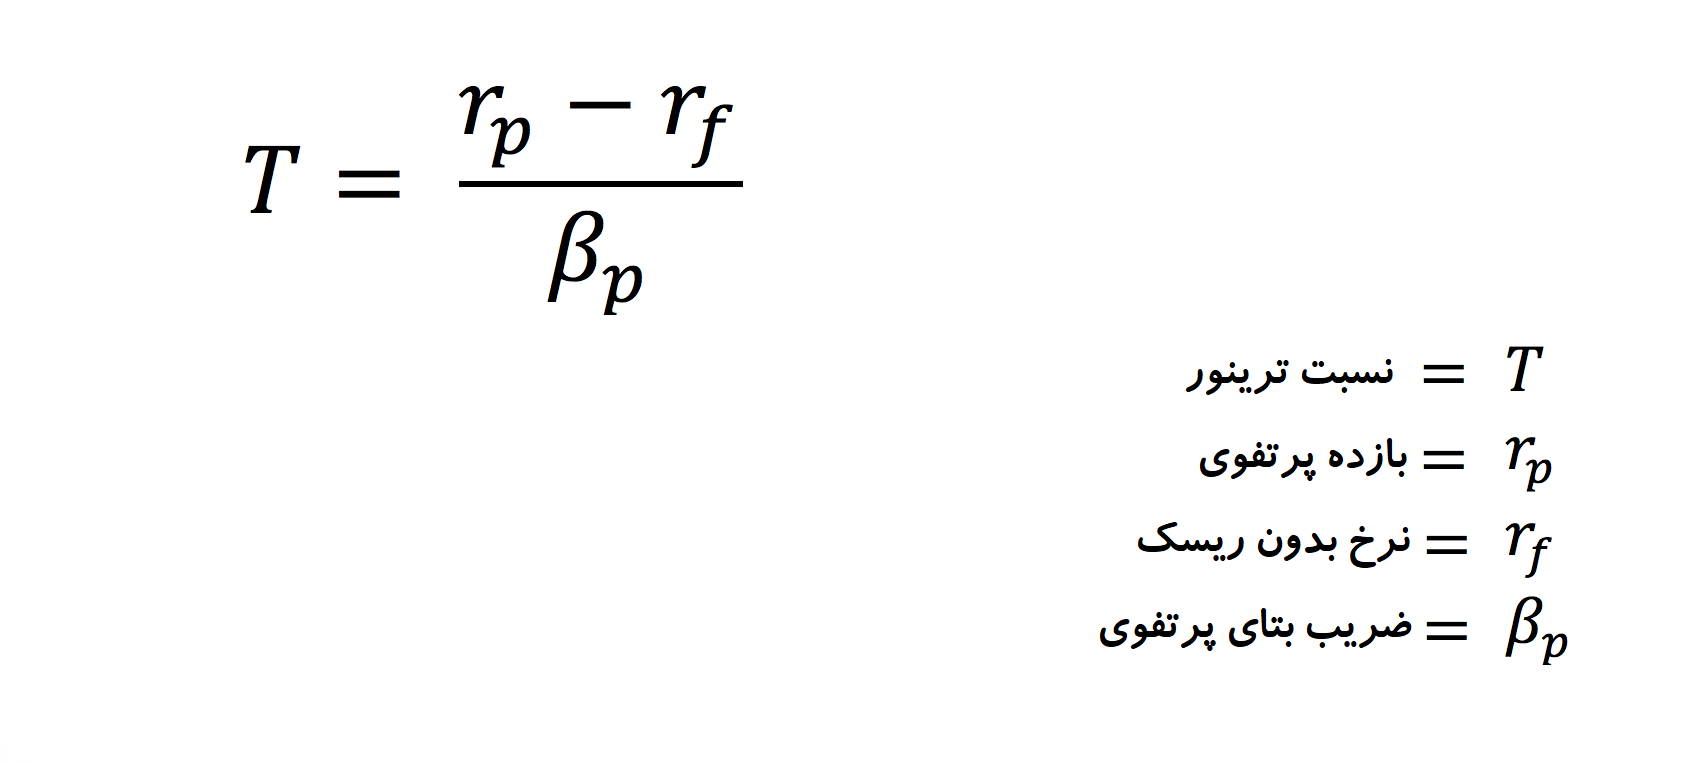 در فرمول نسبت ترینر، مازاد بازده پرتفوی (صرف بازده) بر ریسک سیستماتیک (ضریب بتا) تقسیم می شود. بدین ترتیب، میزان بازده مازاد نسبت به یک واحد ریسک سیستماتیک بدست می آید.